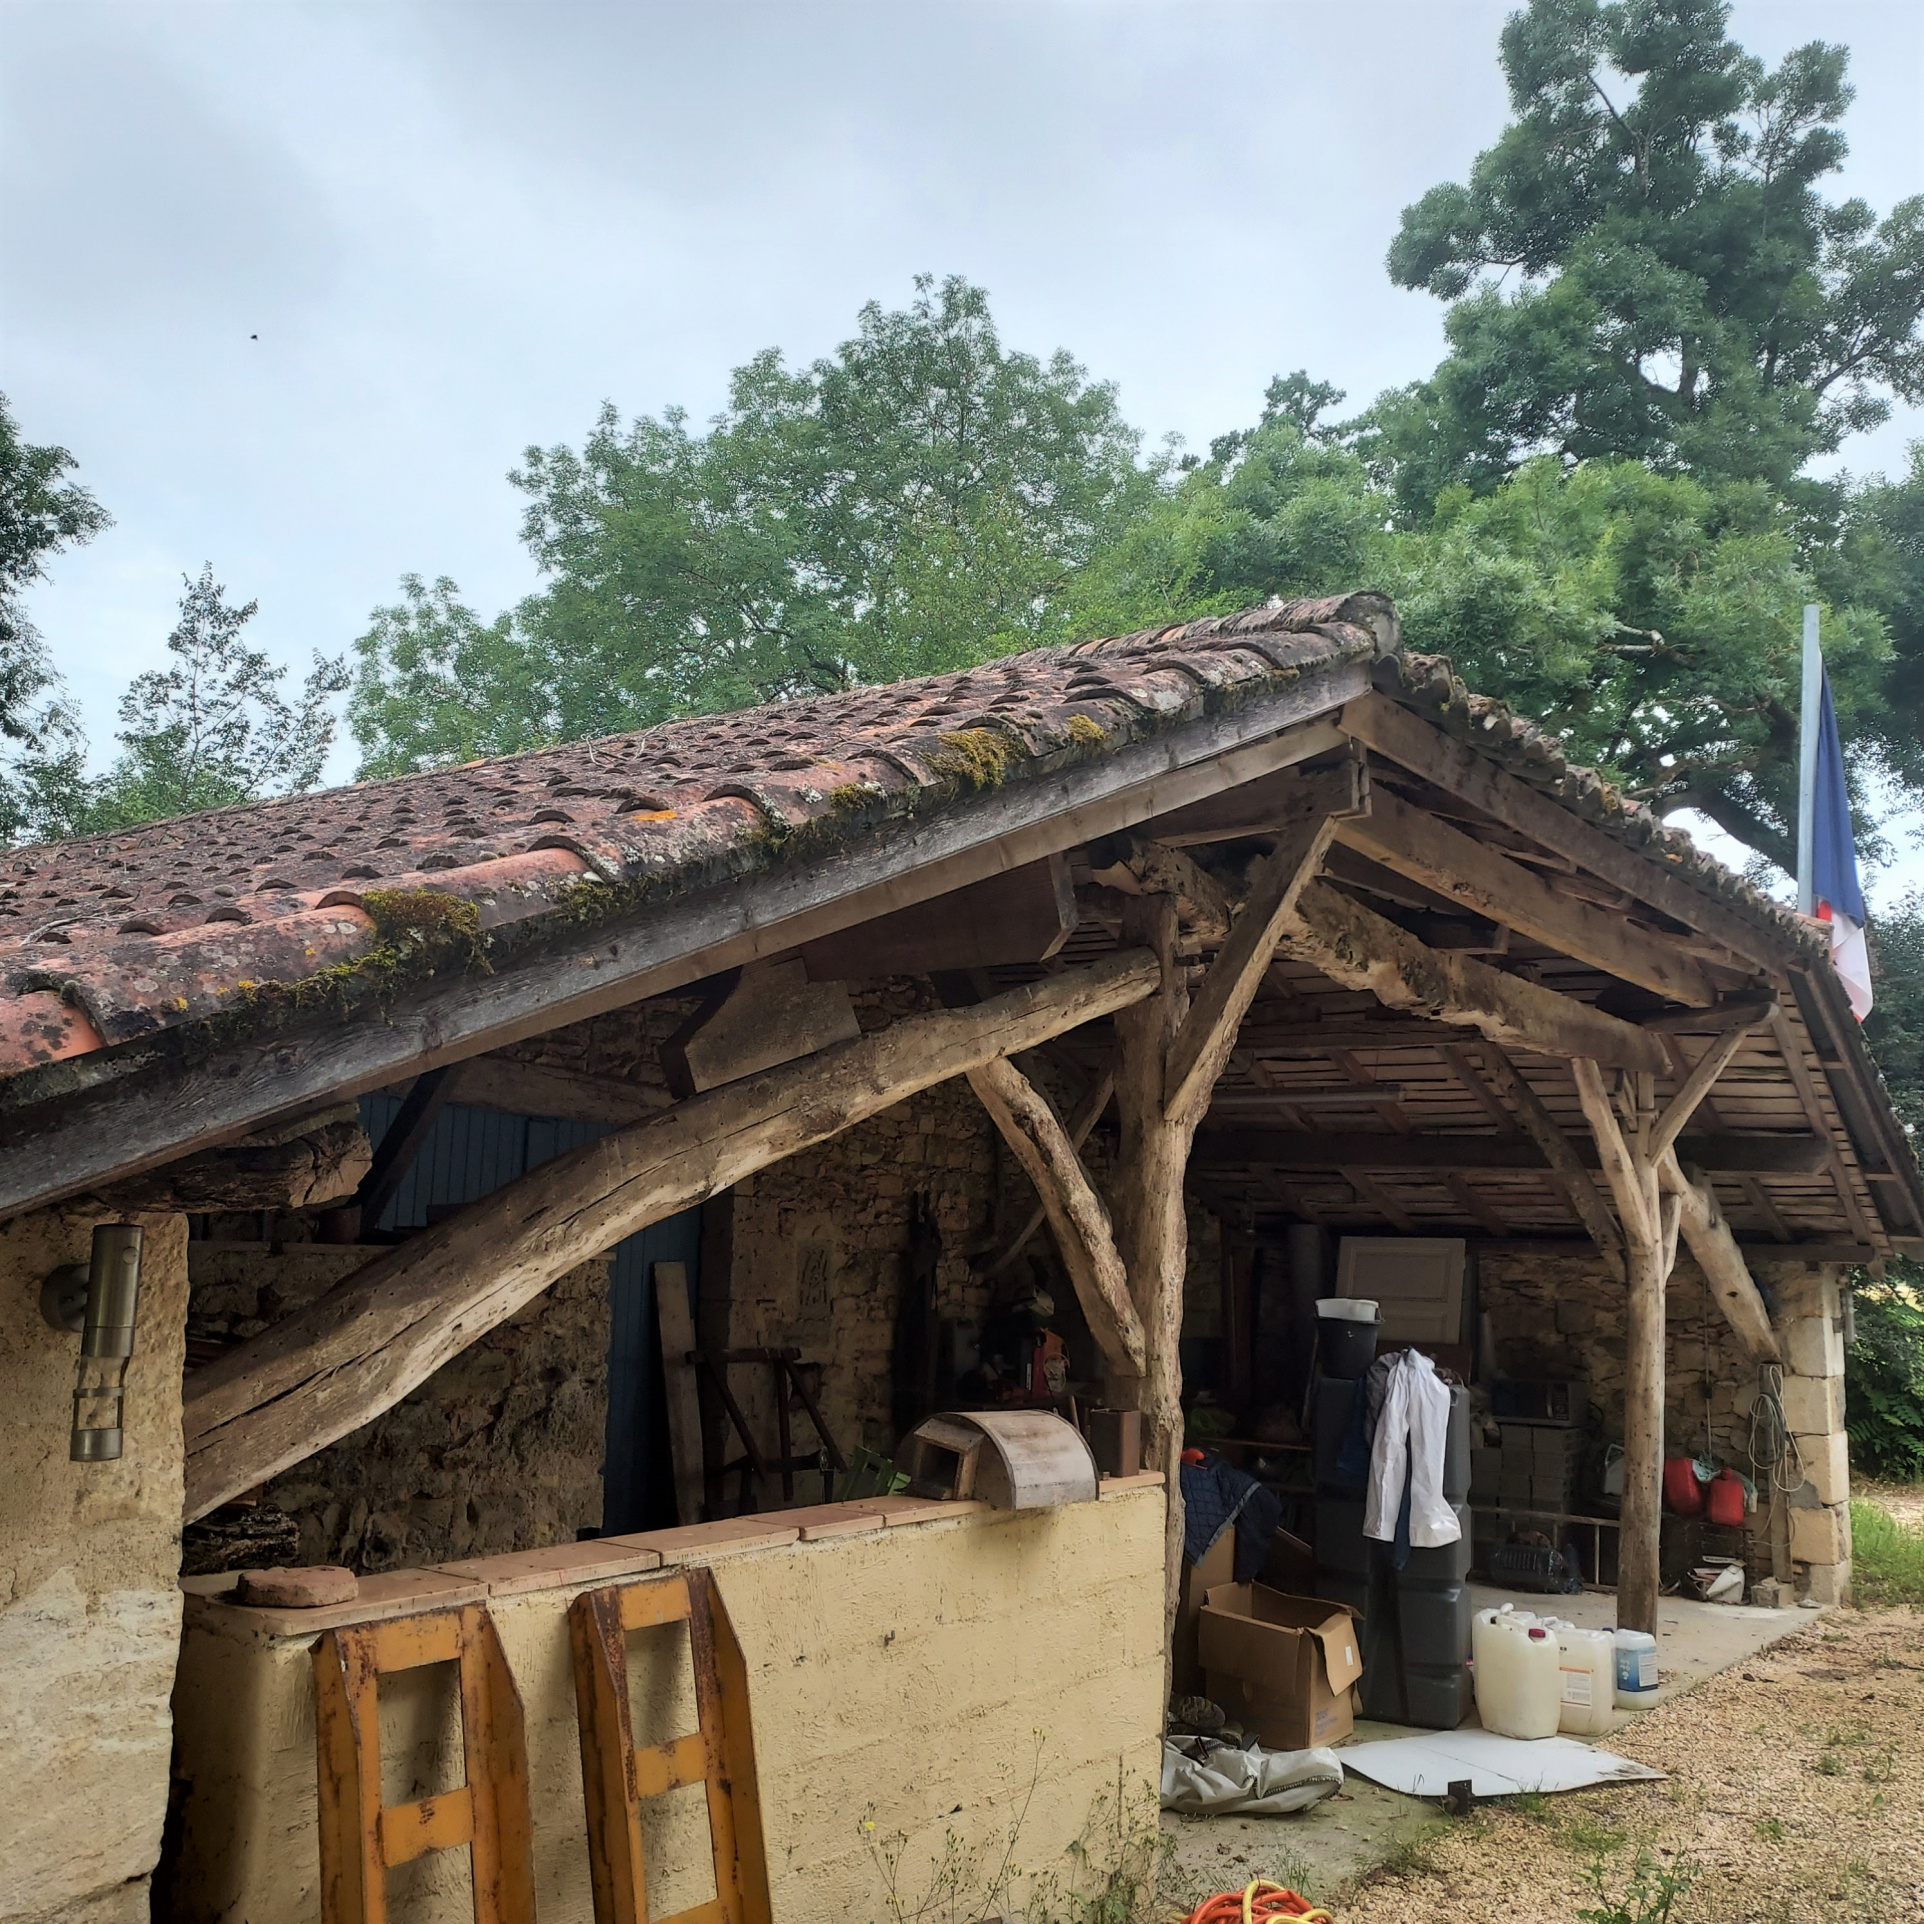 Belle maison de campagne à proximité d'un petit village dynamique du Lot et Garonne